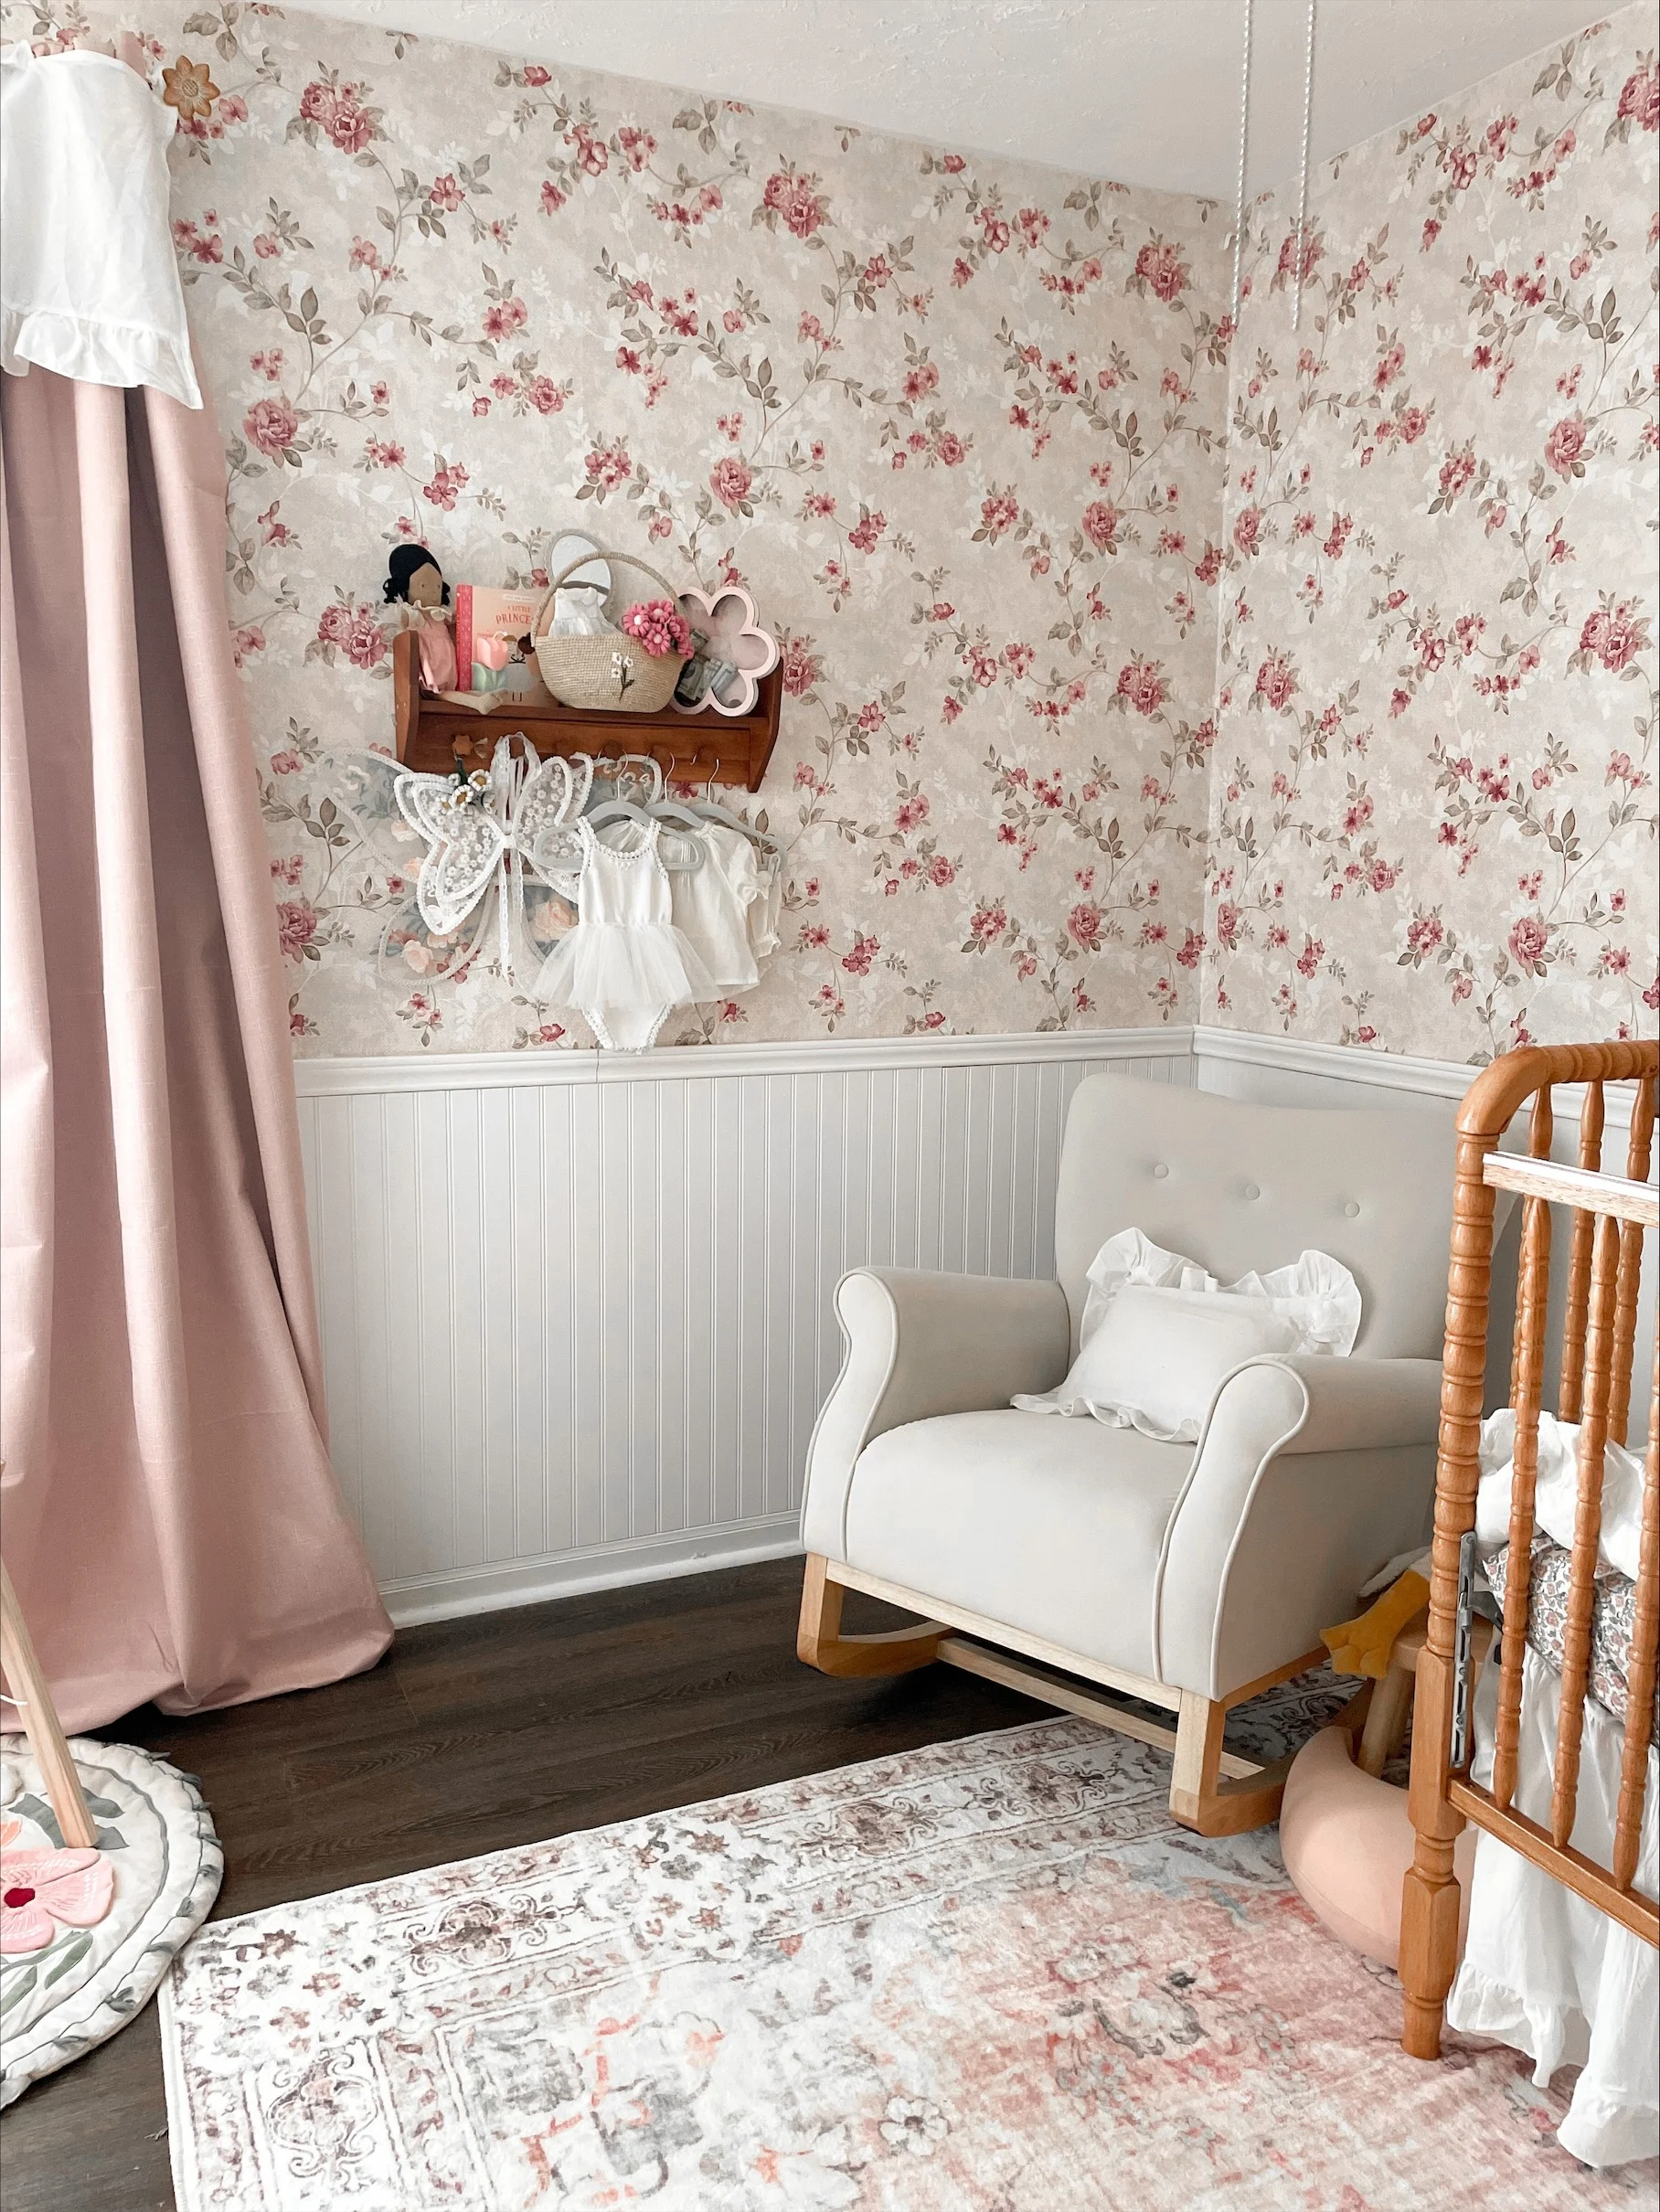 Rocker in Vintage Inspired Floral Wallpaper in Baby Girl Nursery